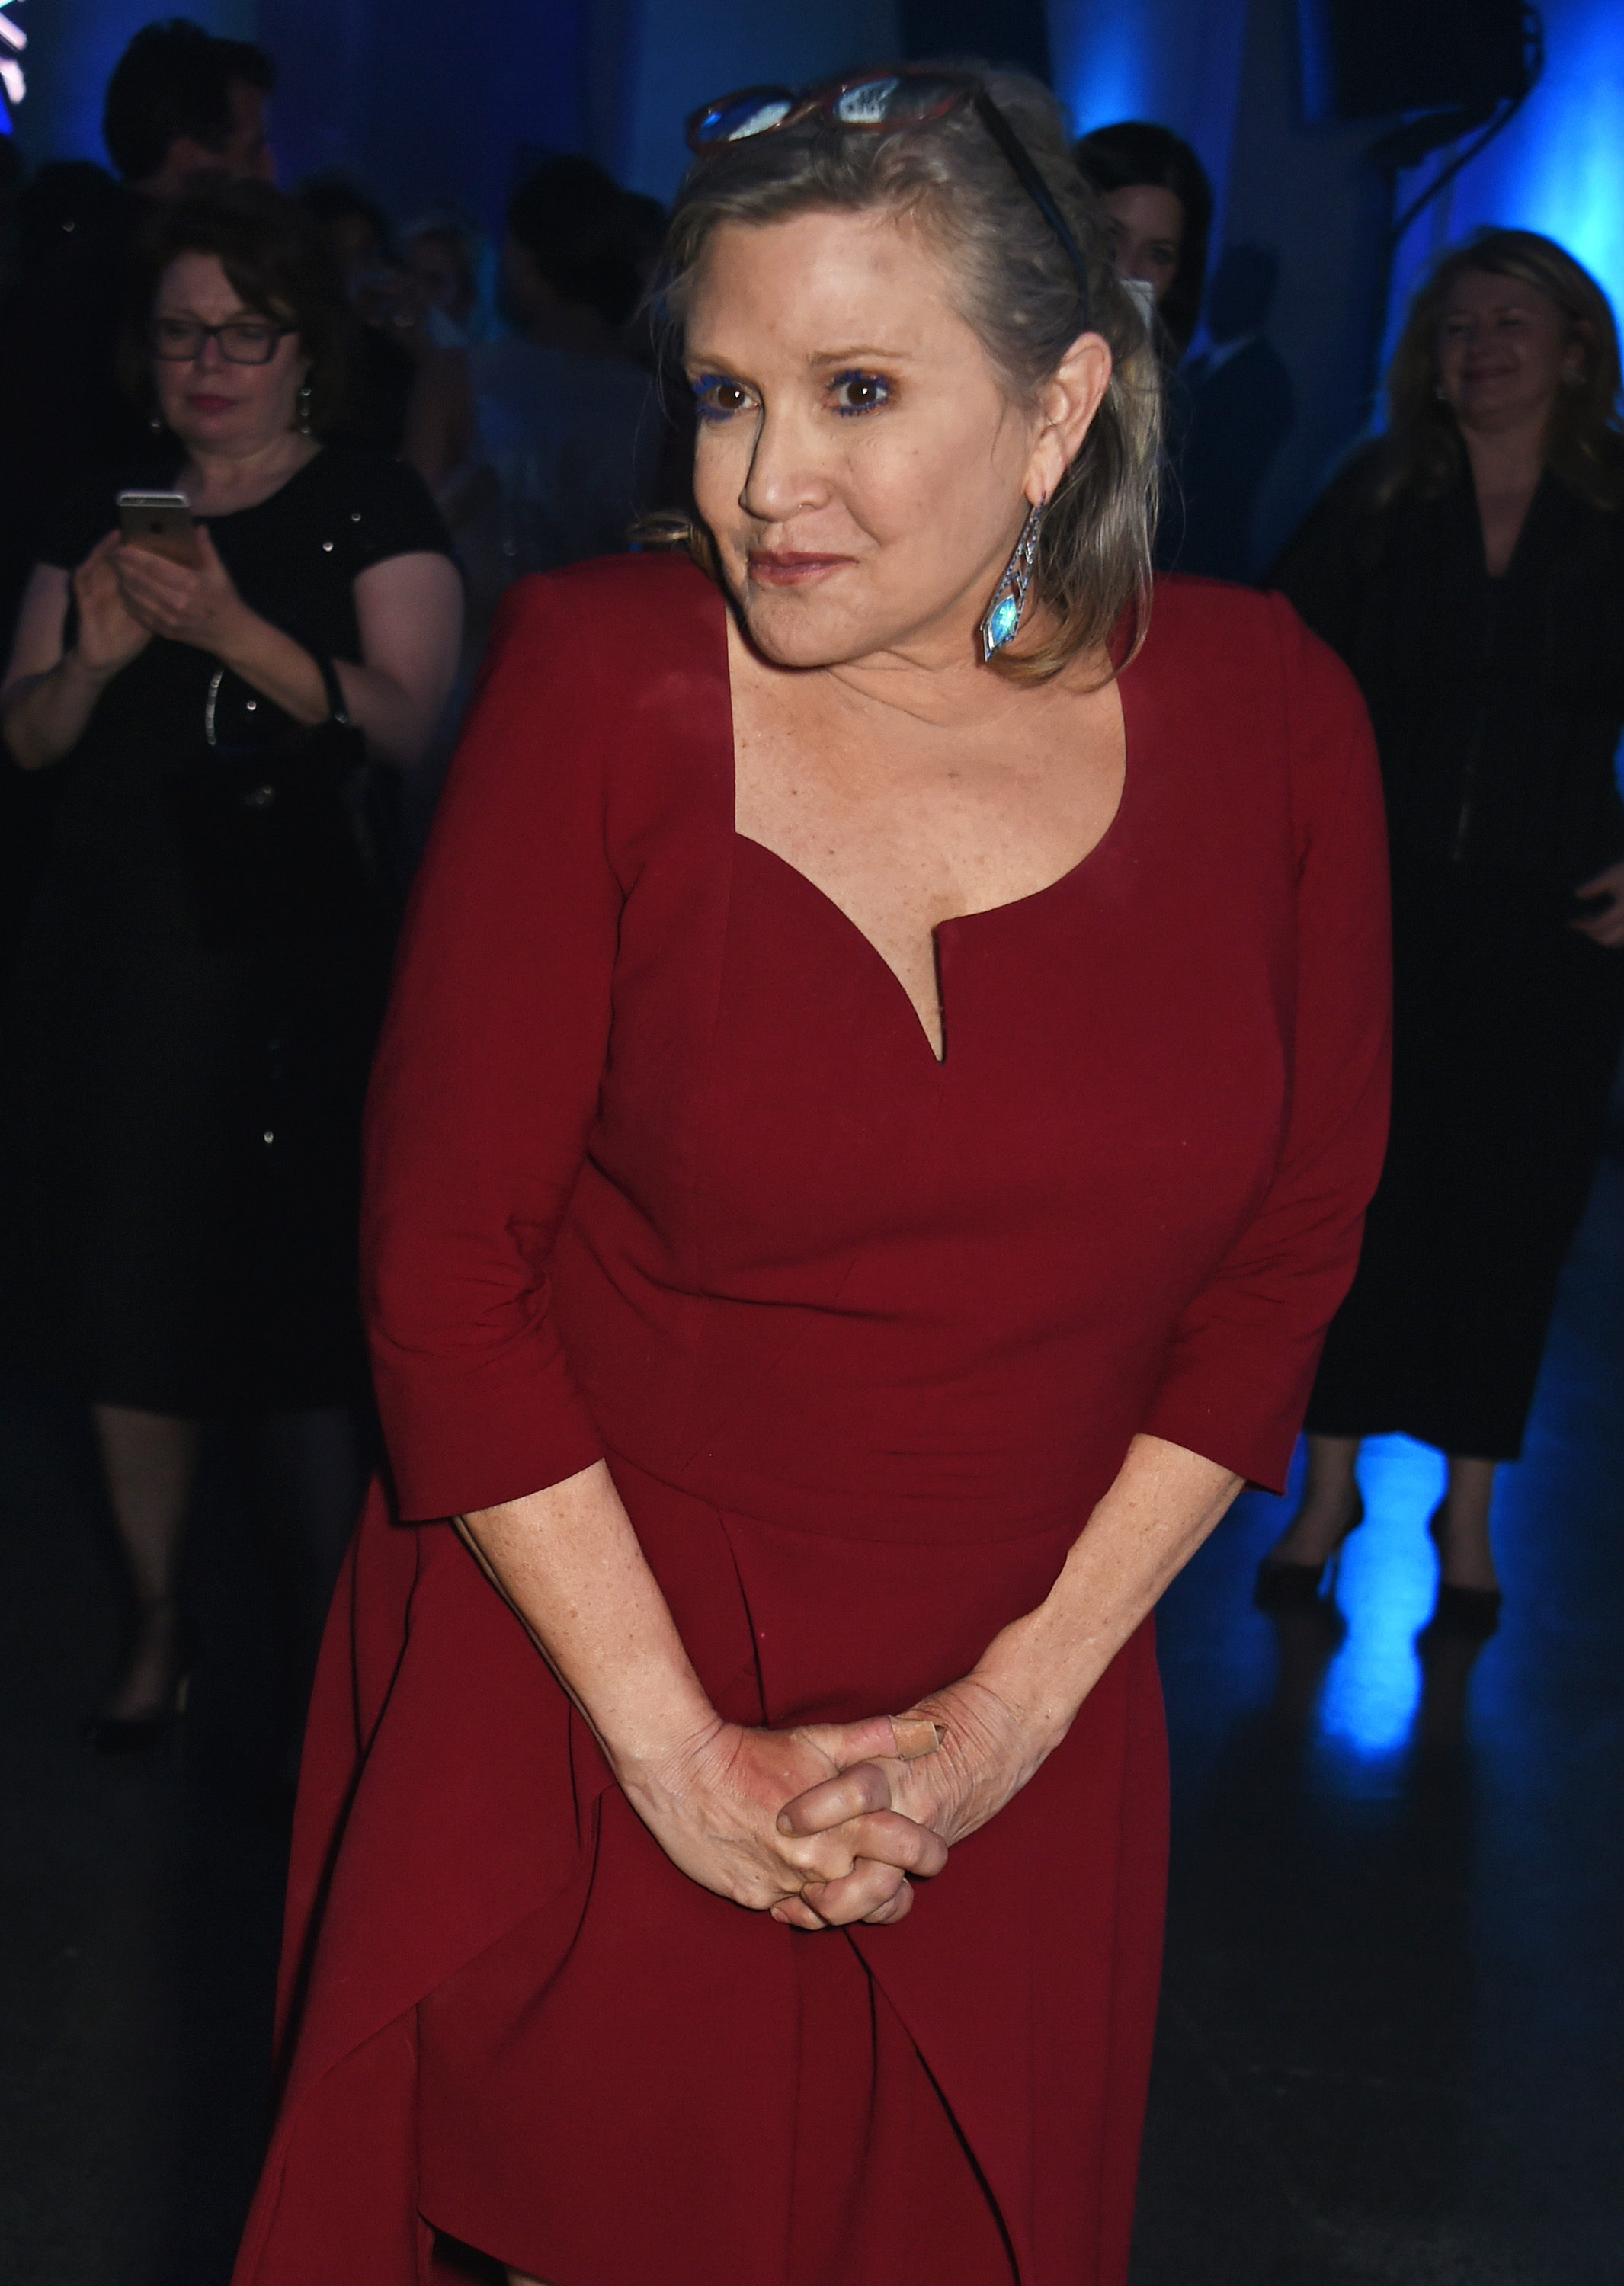 Carrie Fisher asiste a la fiesta posterior al estreno europeo de "Star Wars: The Force Awakens" en Londres, Inglaterra, el 16 de diciembre de 2015. | Fuente: Getty Images